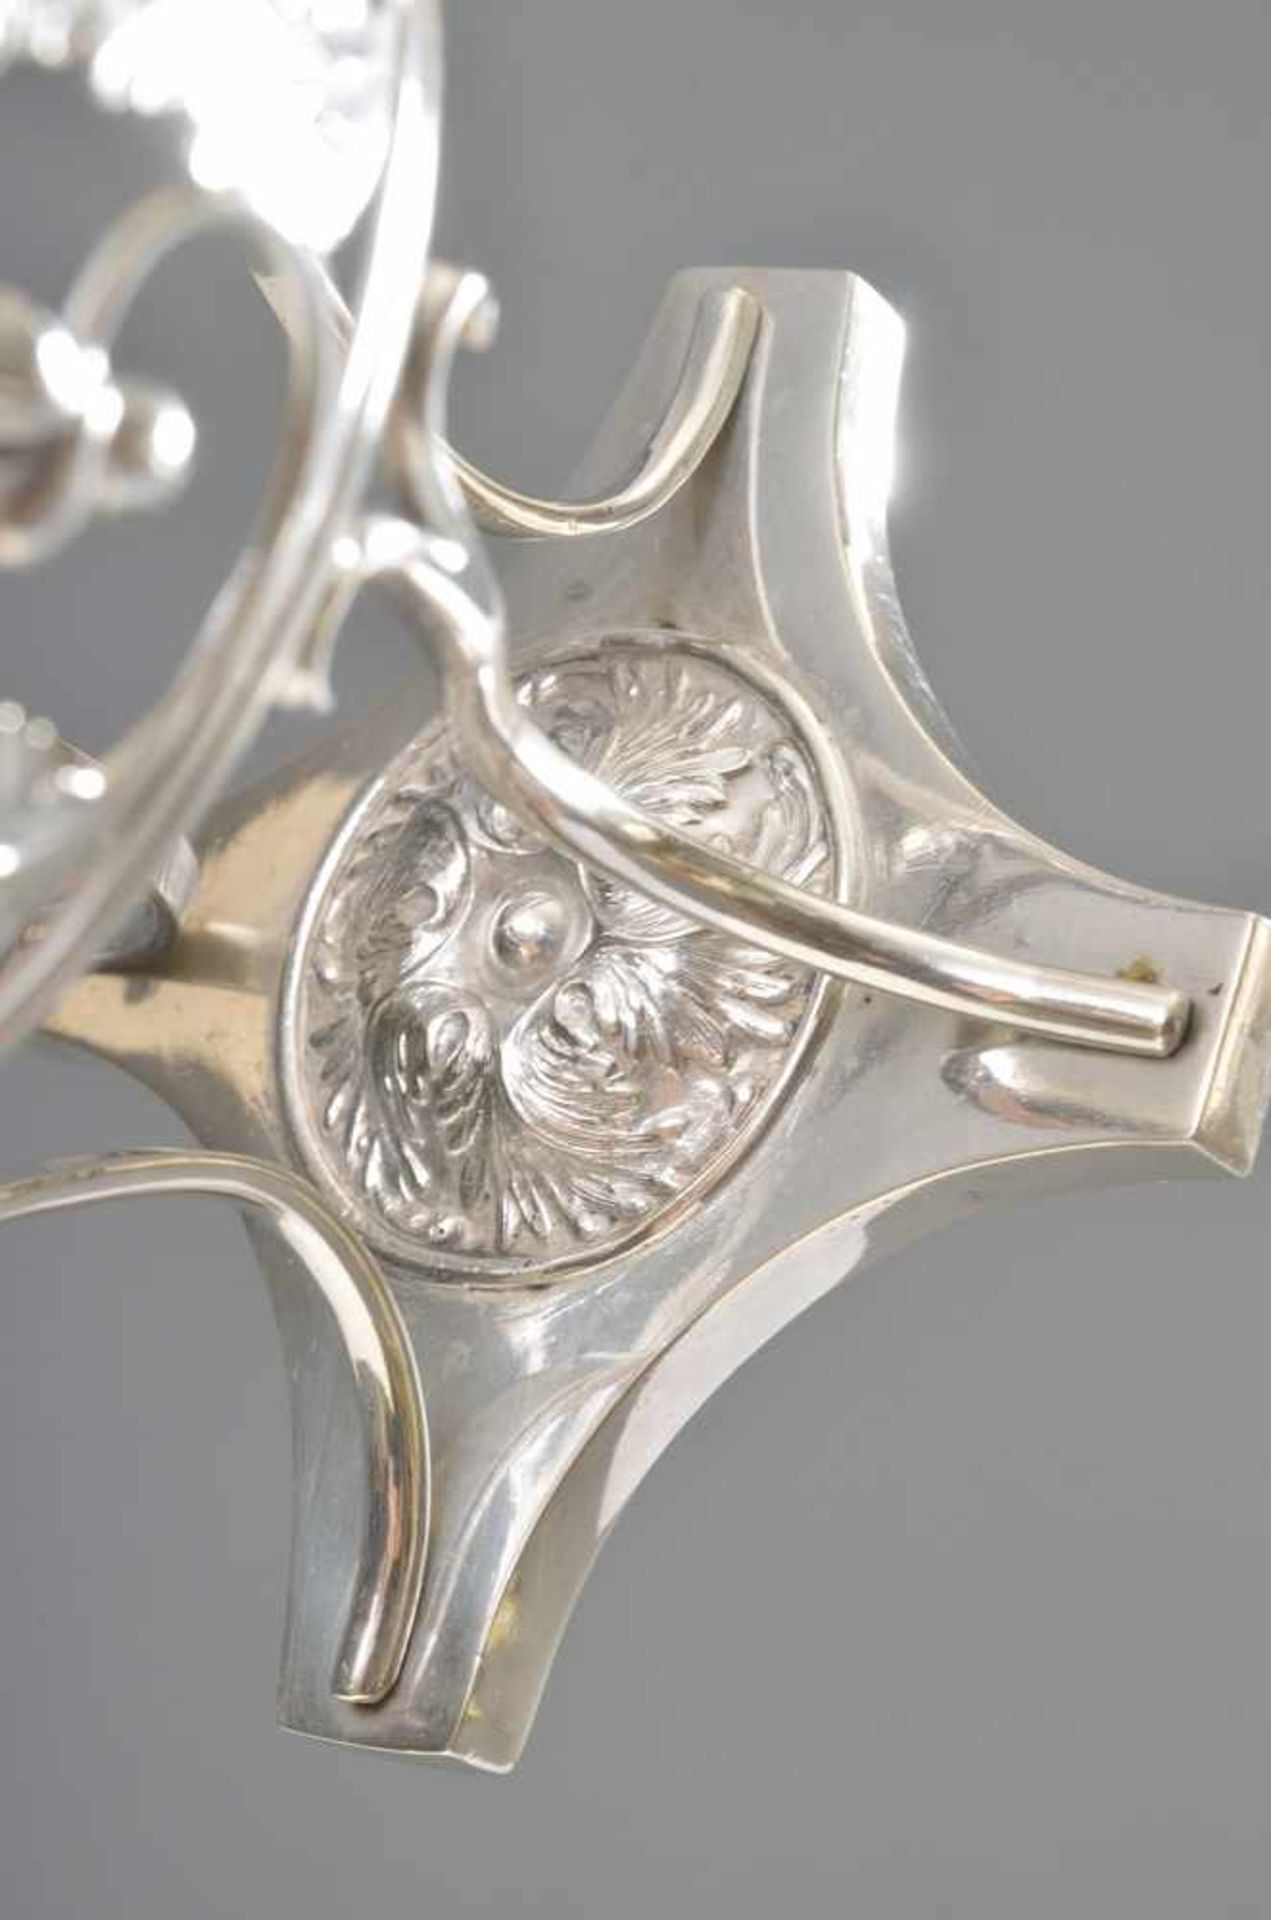 Empire Zuckerkörbchen "Blütenranken", Silber 13 Lot, 155g, Ø 11,5cm, H. 12,5cm, Einsatz fehlt - Image 2 of 2